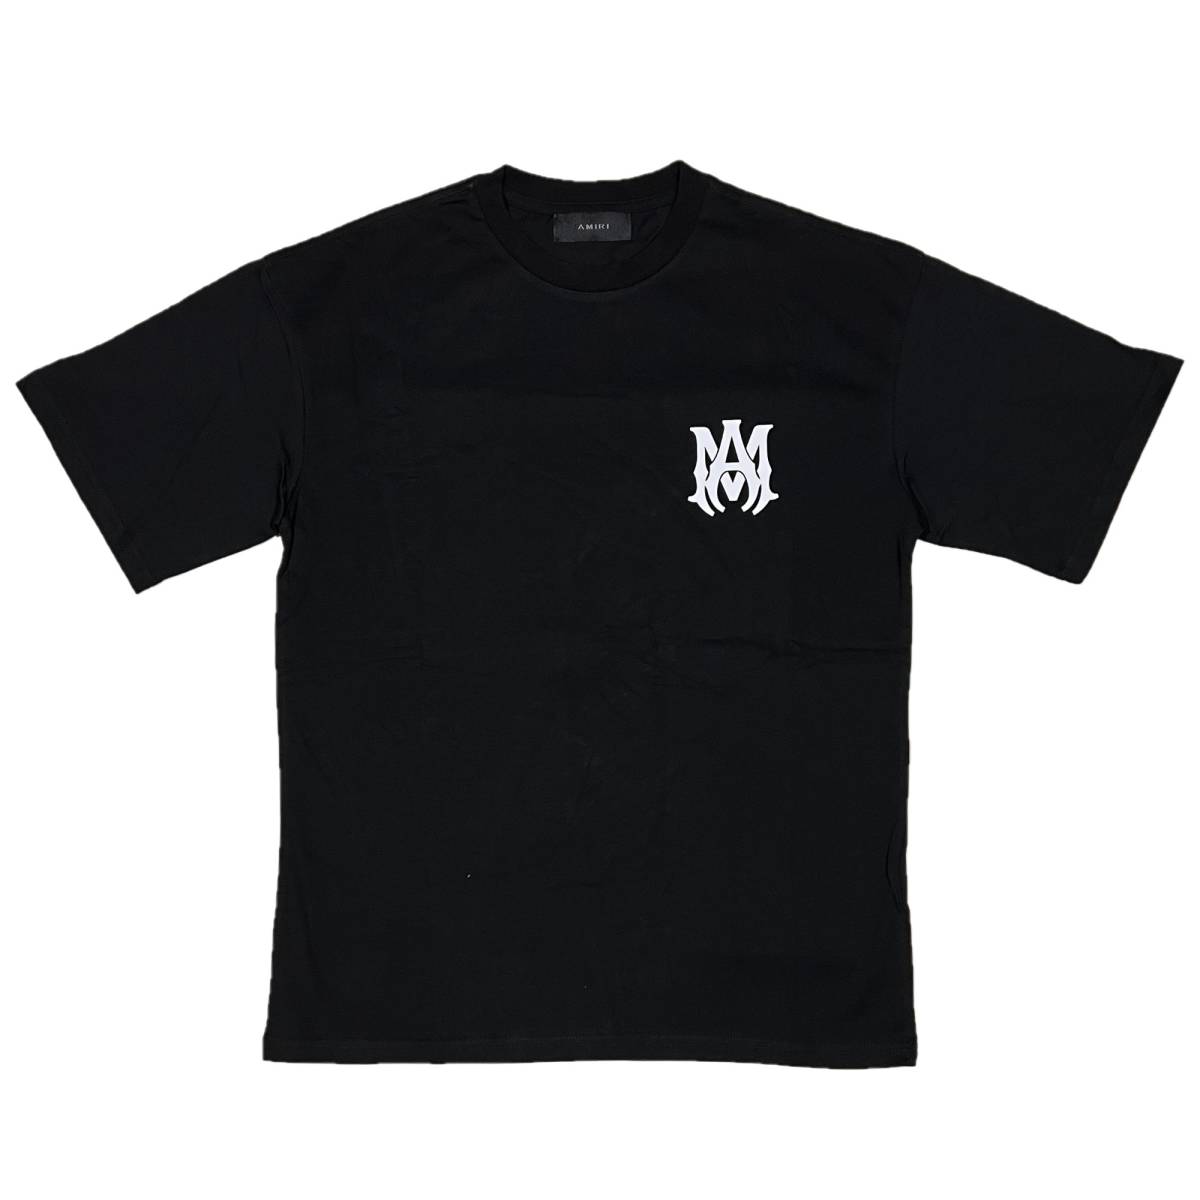 [並行輸入品] AMIRI アミリ MA CORE ロゴ 半袖 Tシャツ (ブラック) (S)